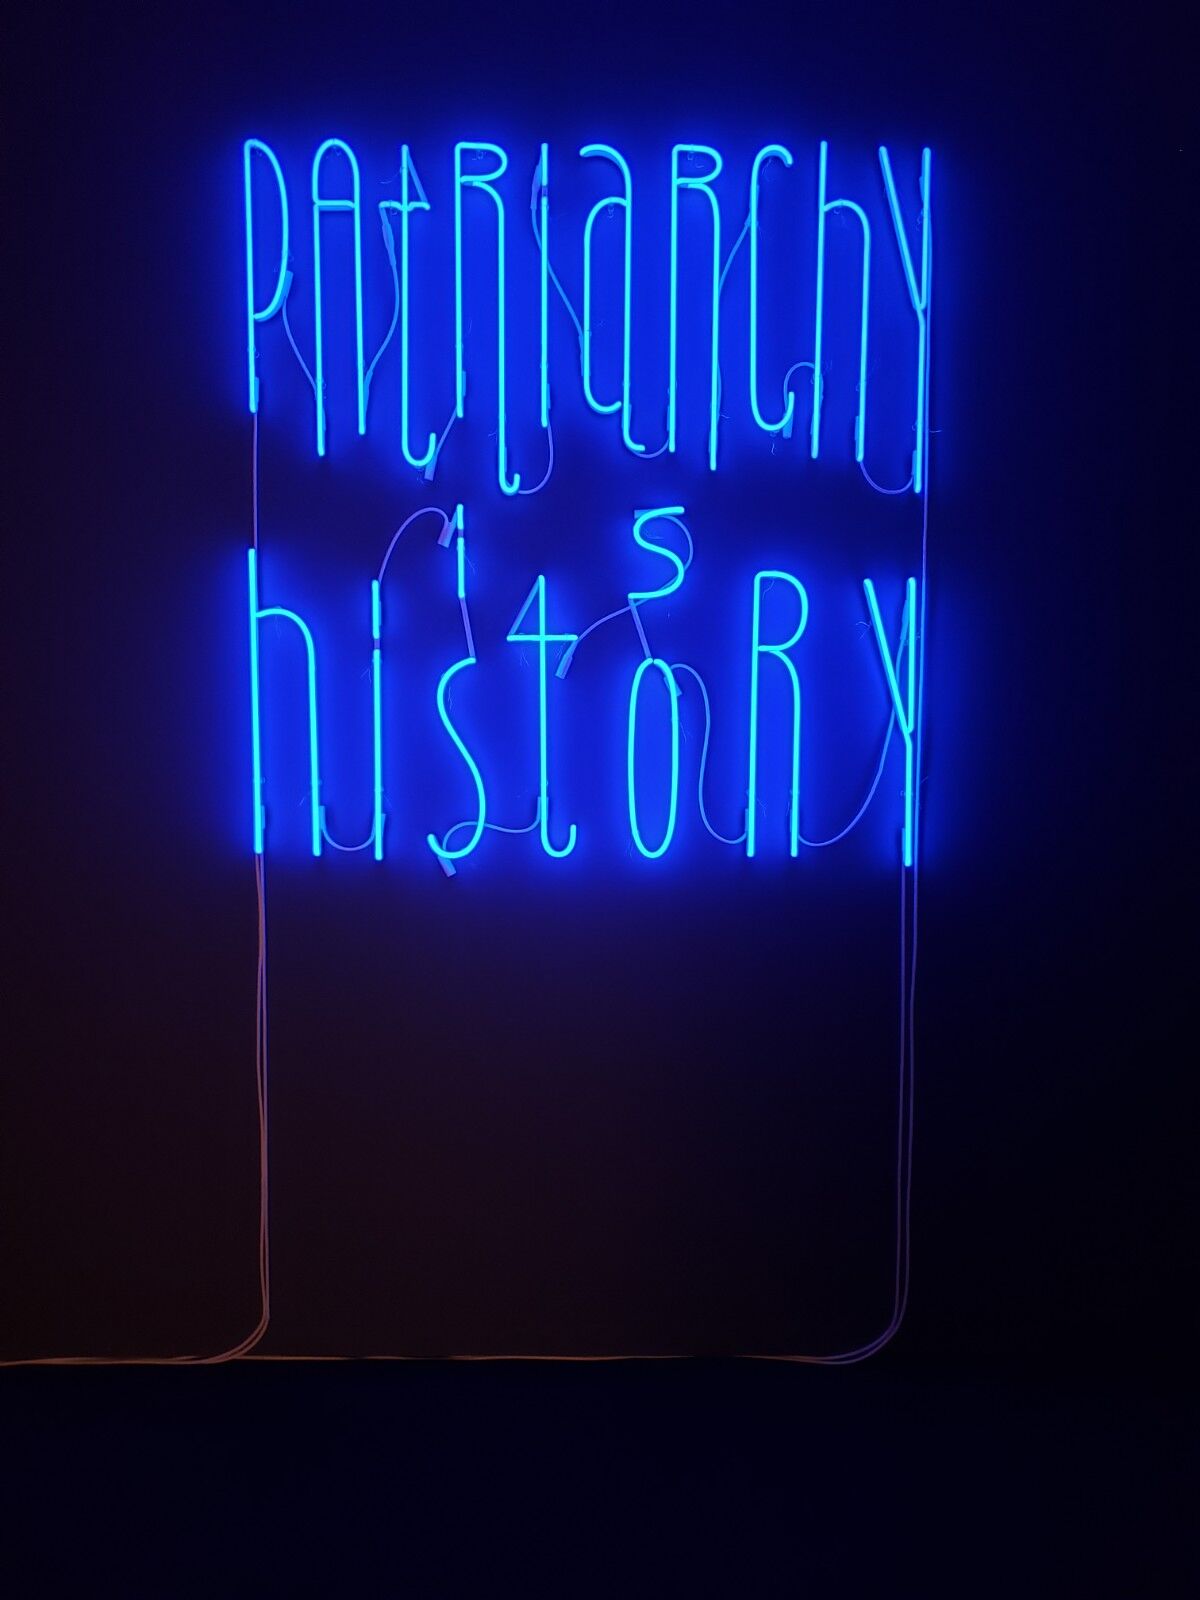 Yael Bartana, "Patriarchy Is History," neon